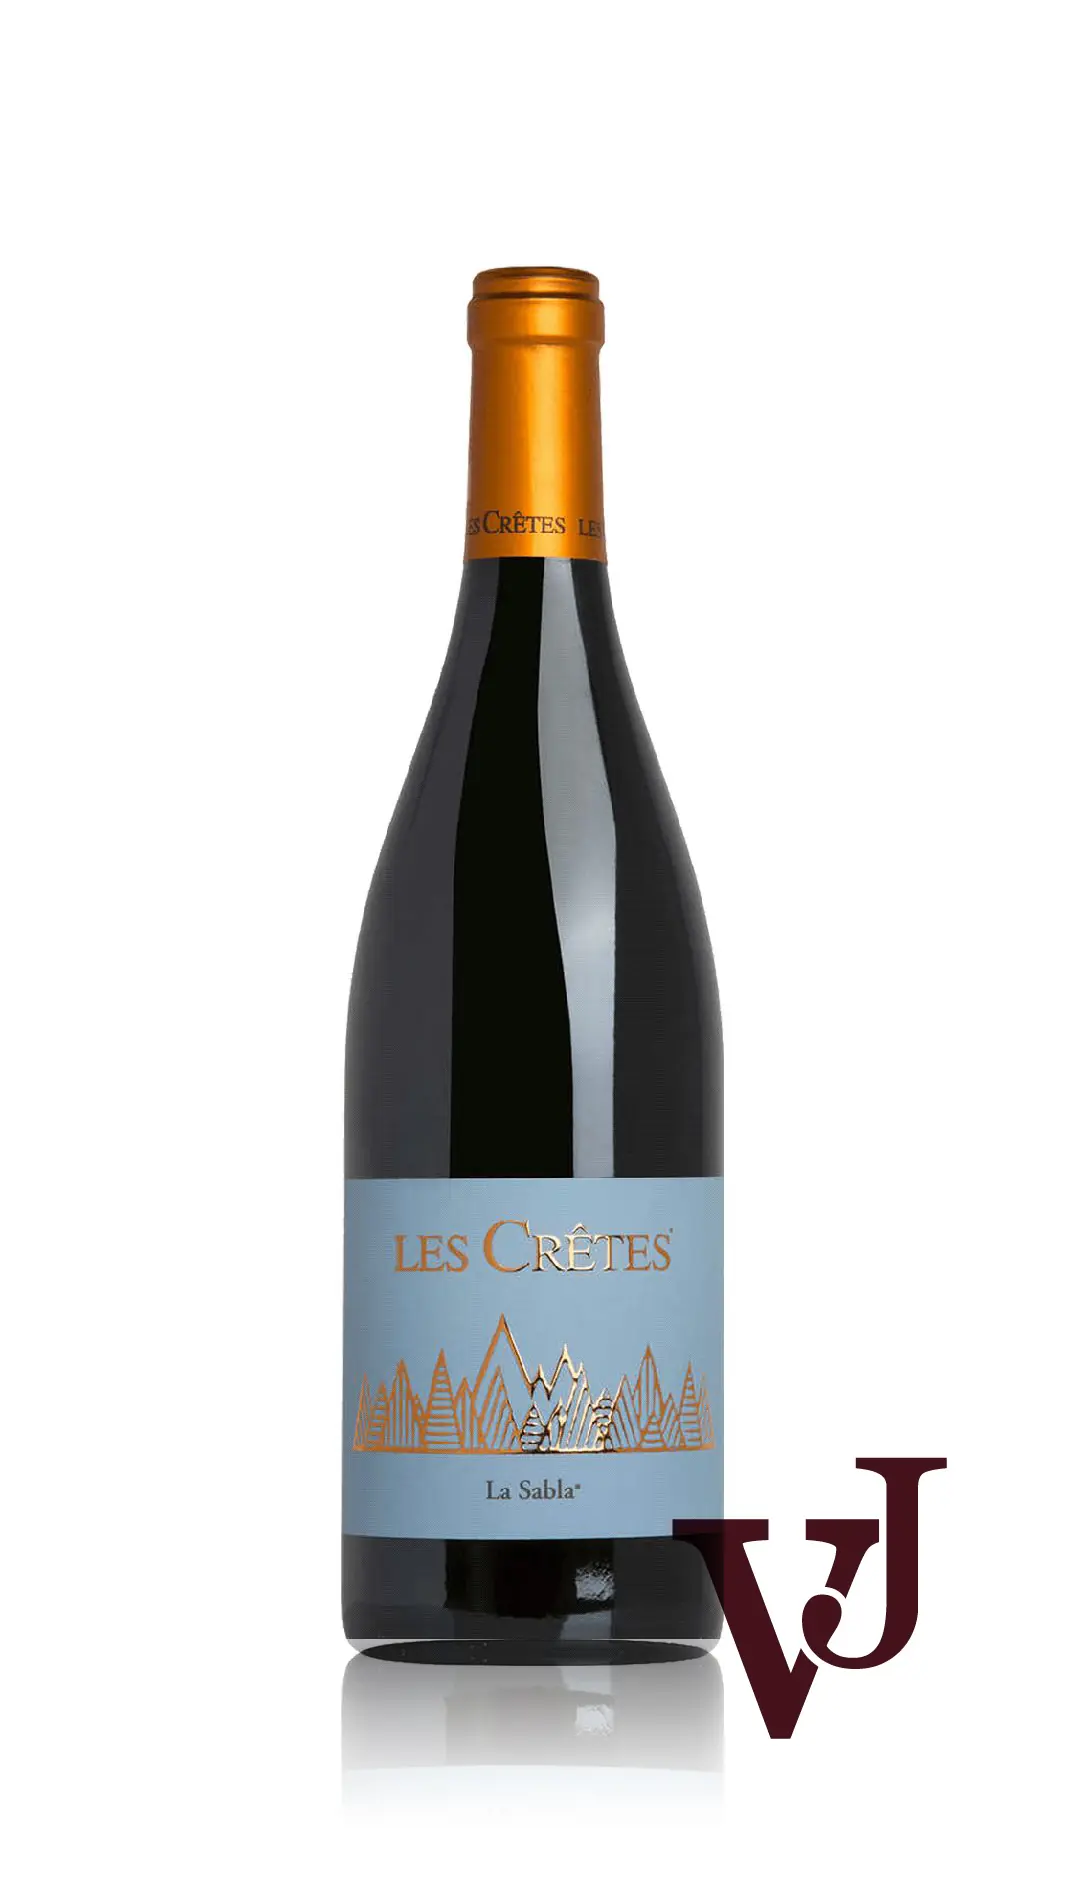 Rött Vin - La Sabla Vino Rosso artikel nummer 7819501 från producenten Les Crêtes från området Italien - Vinjournalen.se